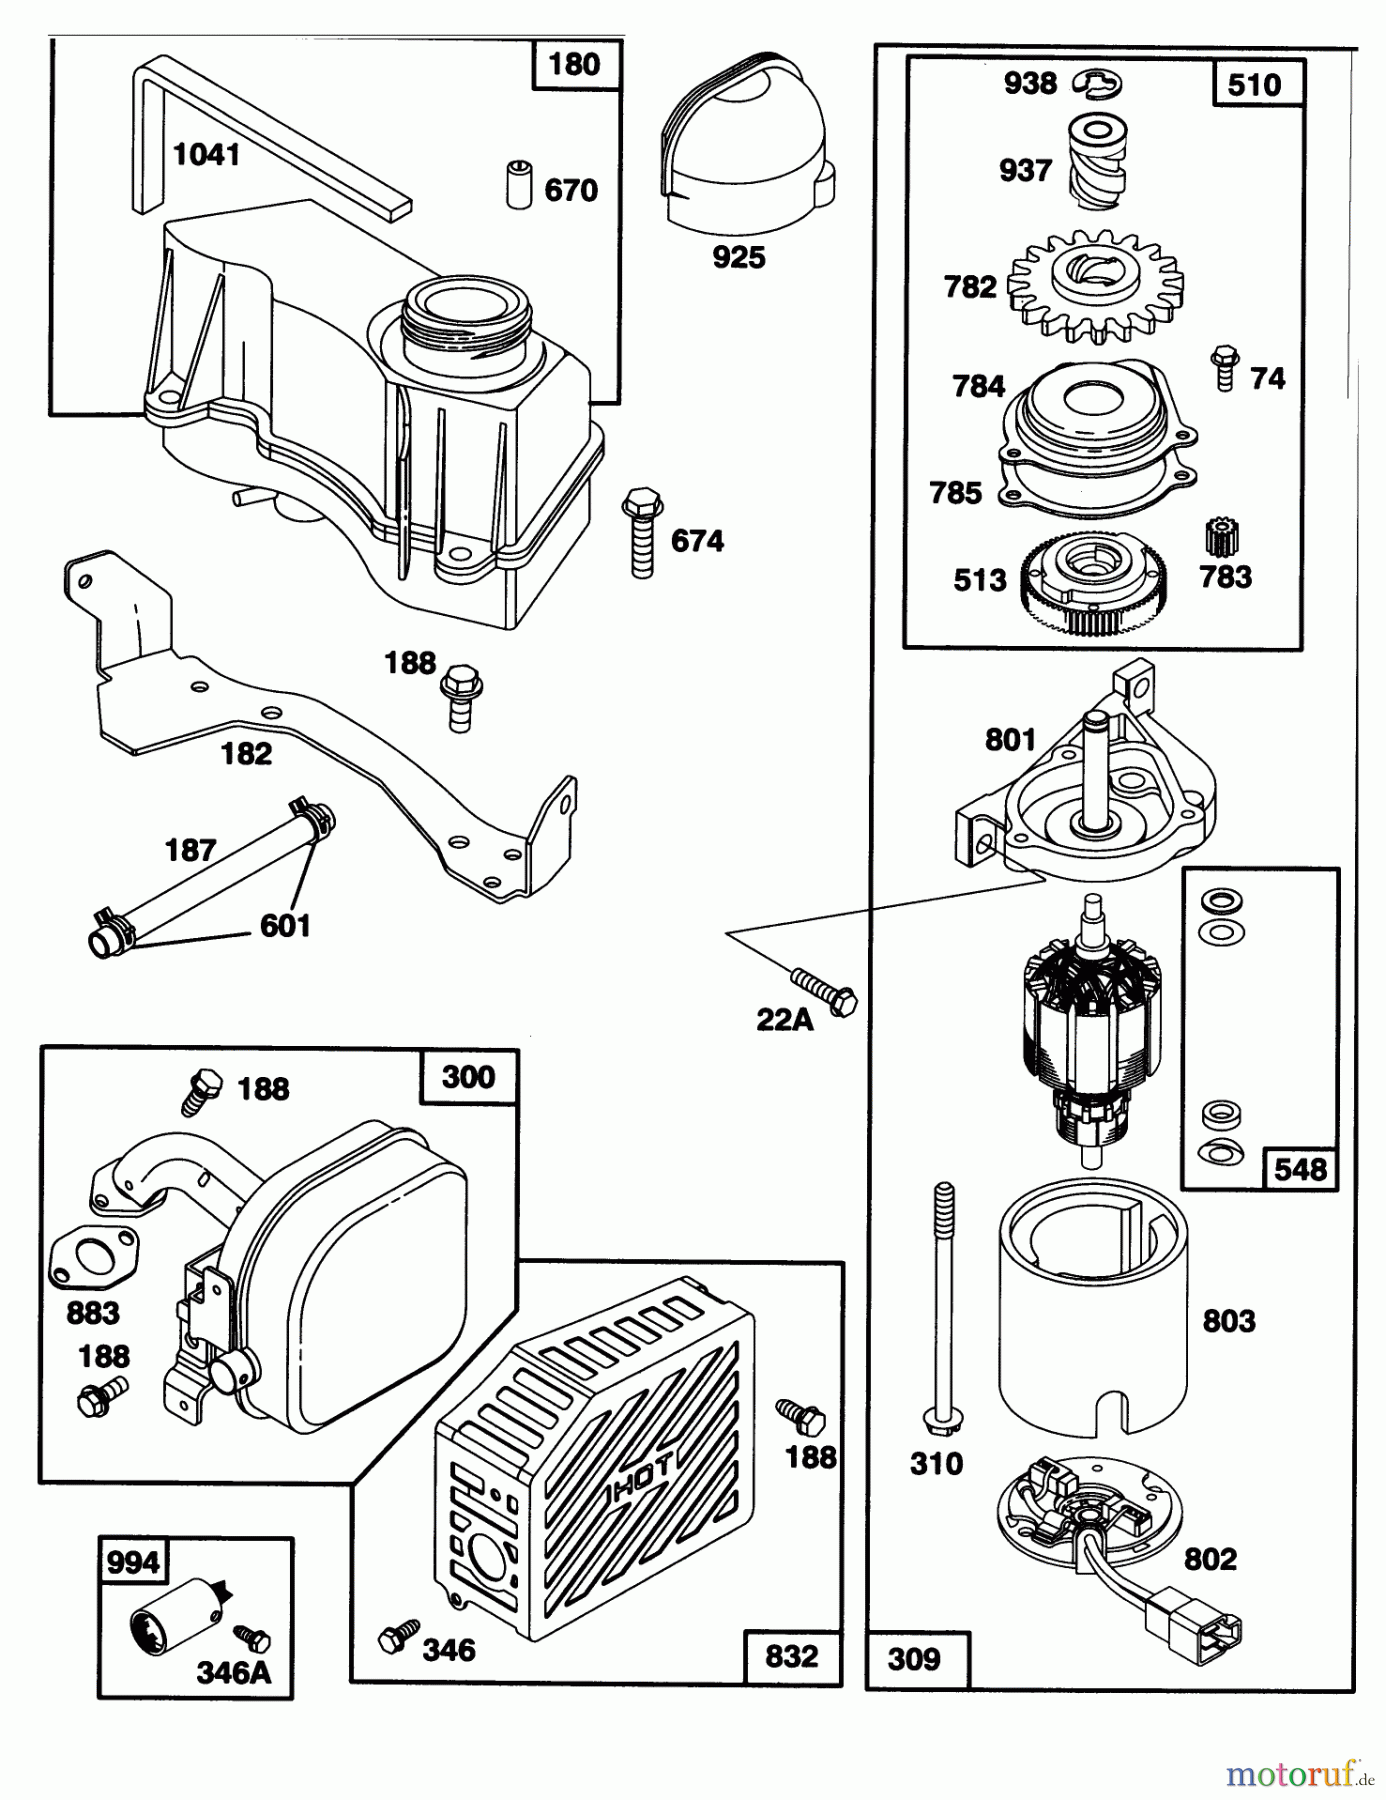  Toro Neu Mowers, Walk-Behind Seite 1 20763B - Toro Lawnmower, 1993 (39000001-39999999) ENGINE GTS-150 #4